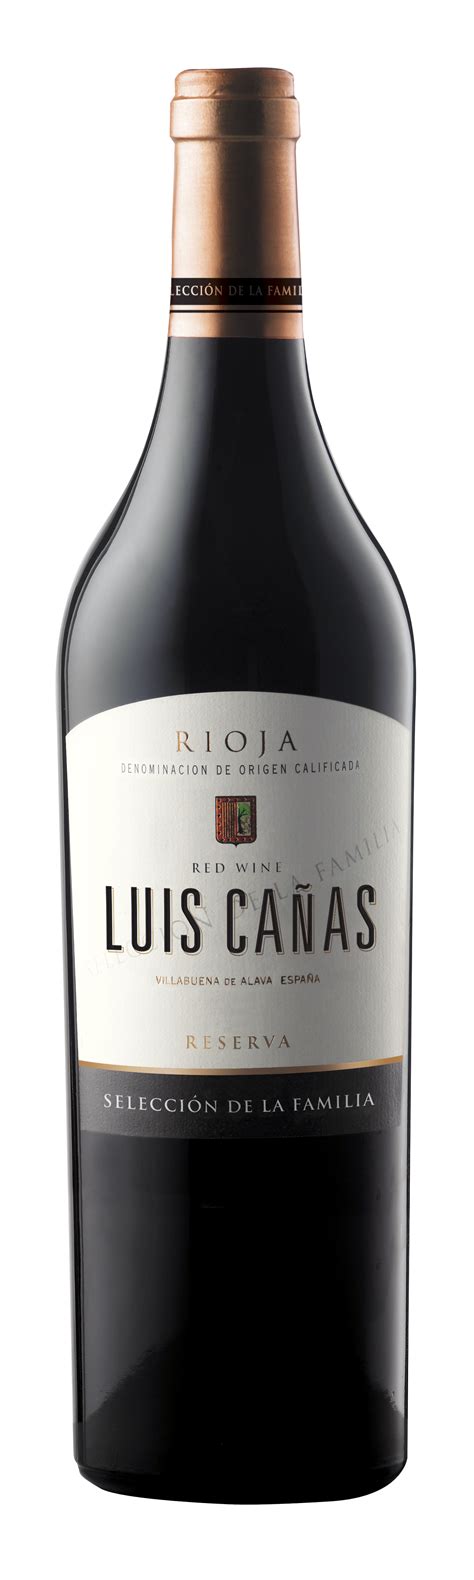 Luis Canas Reserva Seleccion De La Familia Rioja 2017 Timeless Wines Order Wine Online From